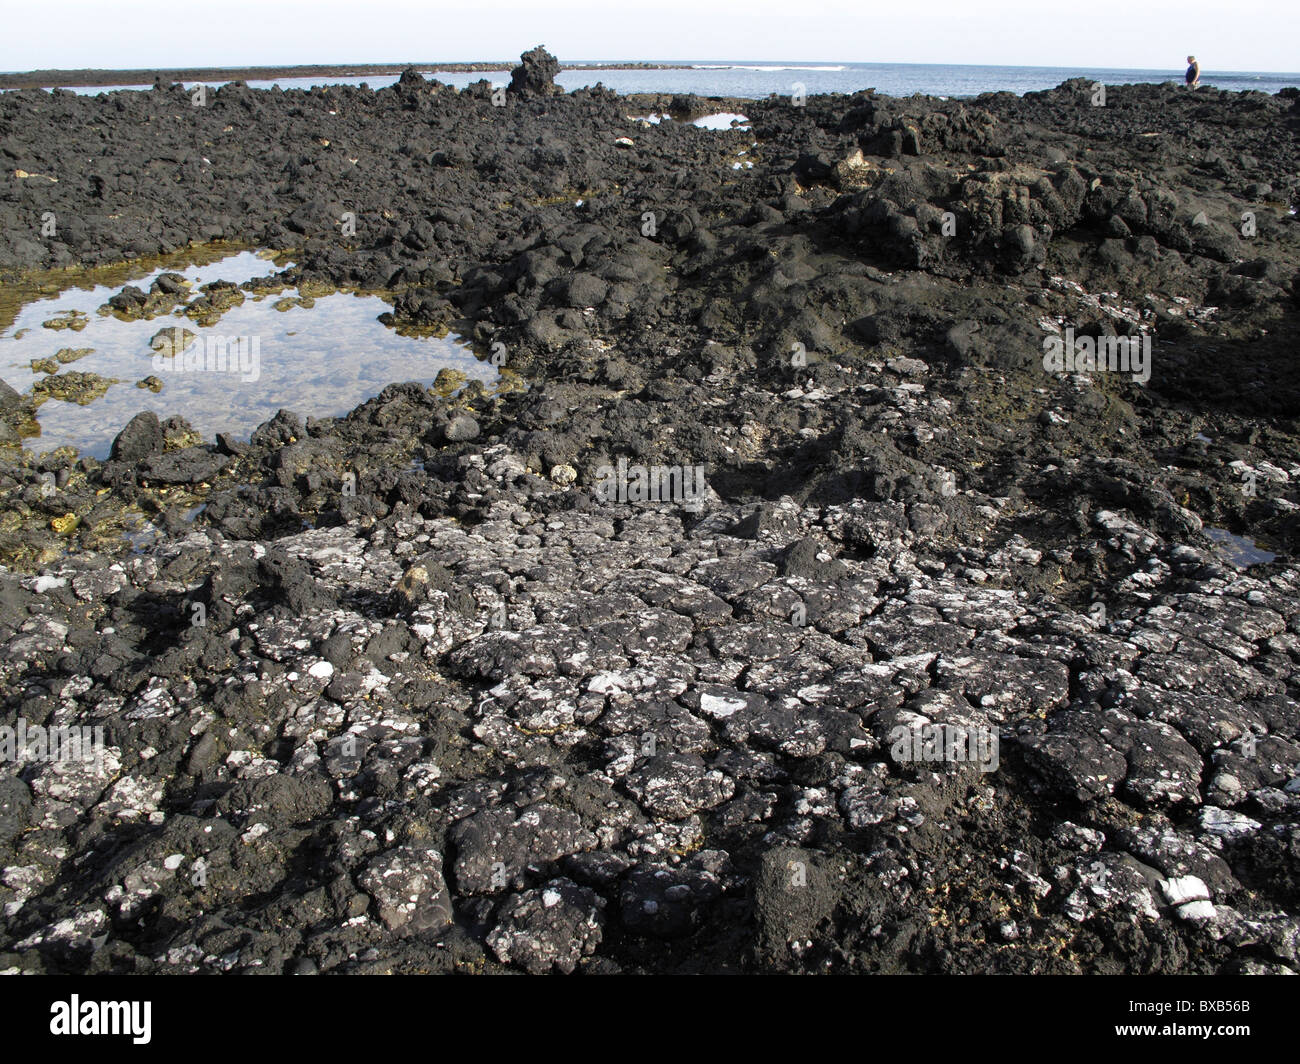 Le bitume sur une côte rocheuse à la suite d'un déversement de pétrole, Lanzarote, Canary Islands, Spain, Europe Banque D'Images